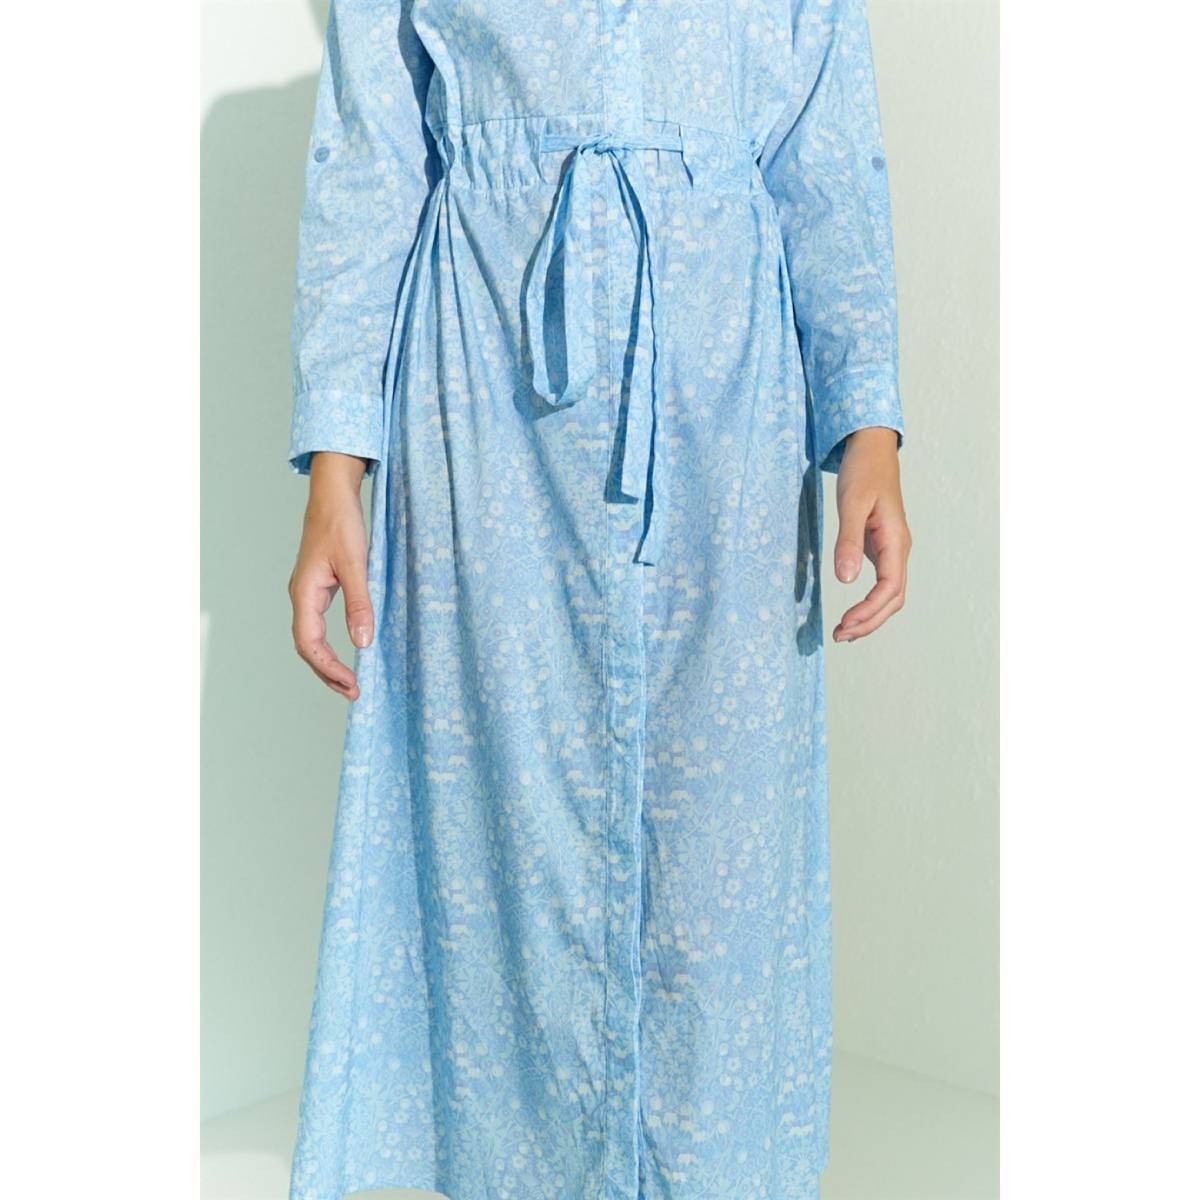 Flo Kadın  Mavi Desenli  Beli Tünelli Kolu Katlamalı Bilek Boy Elbise. 4